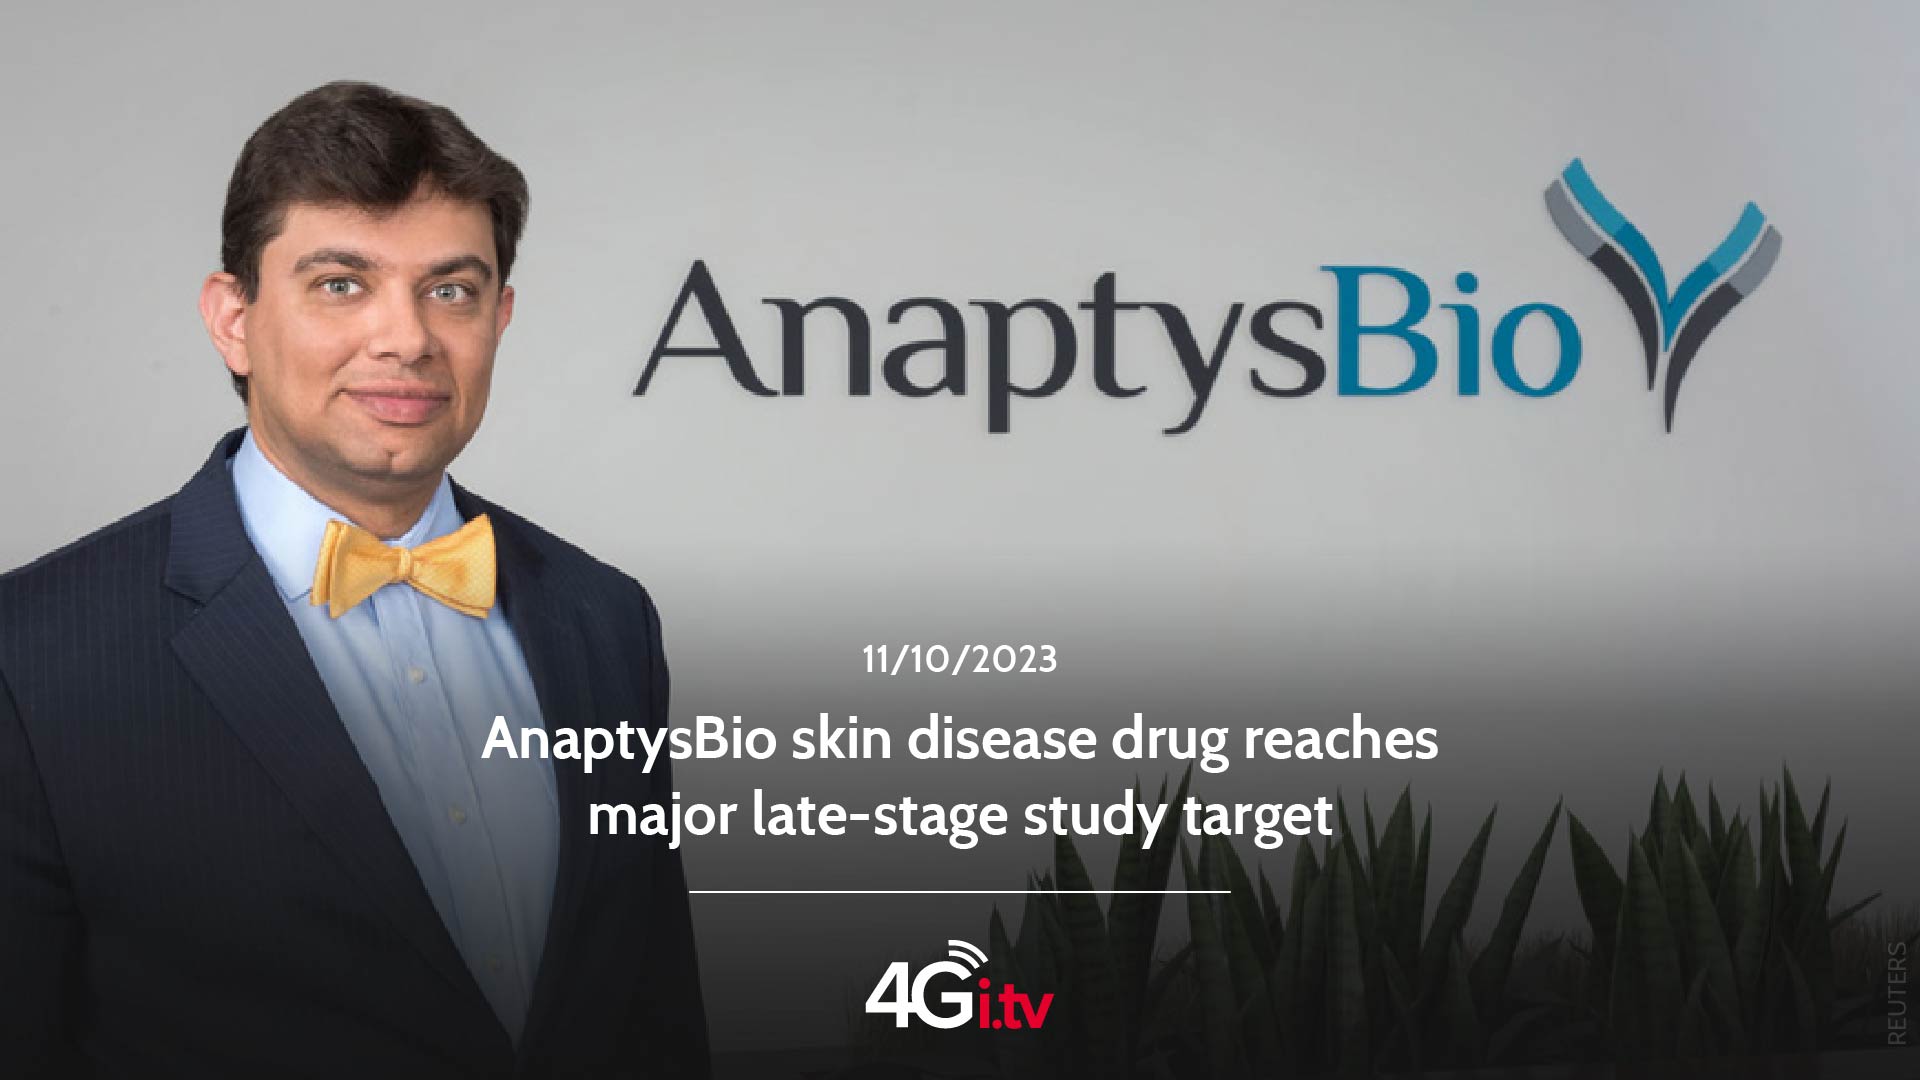 Lesen Sie mehr über den Artikel AnaptysBio skin disease drug reaches major late-stage study target